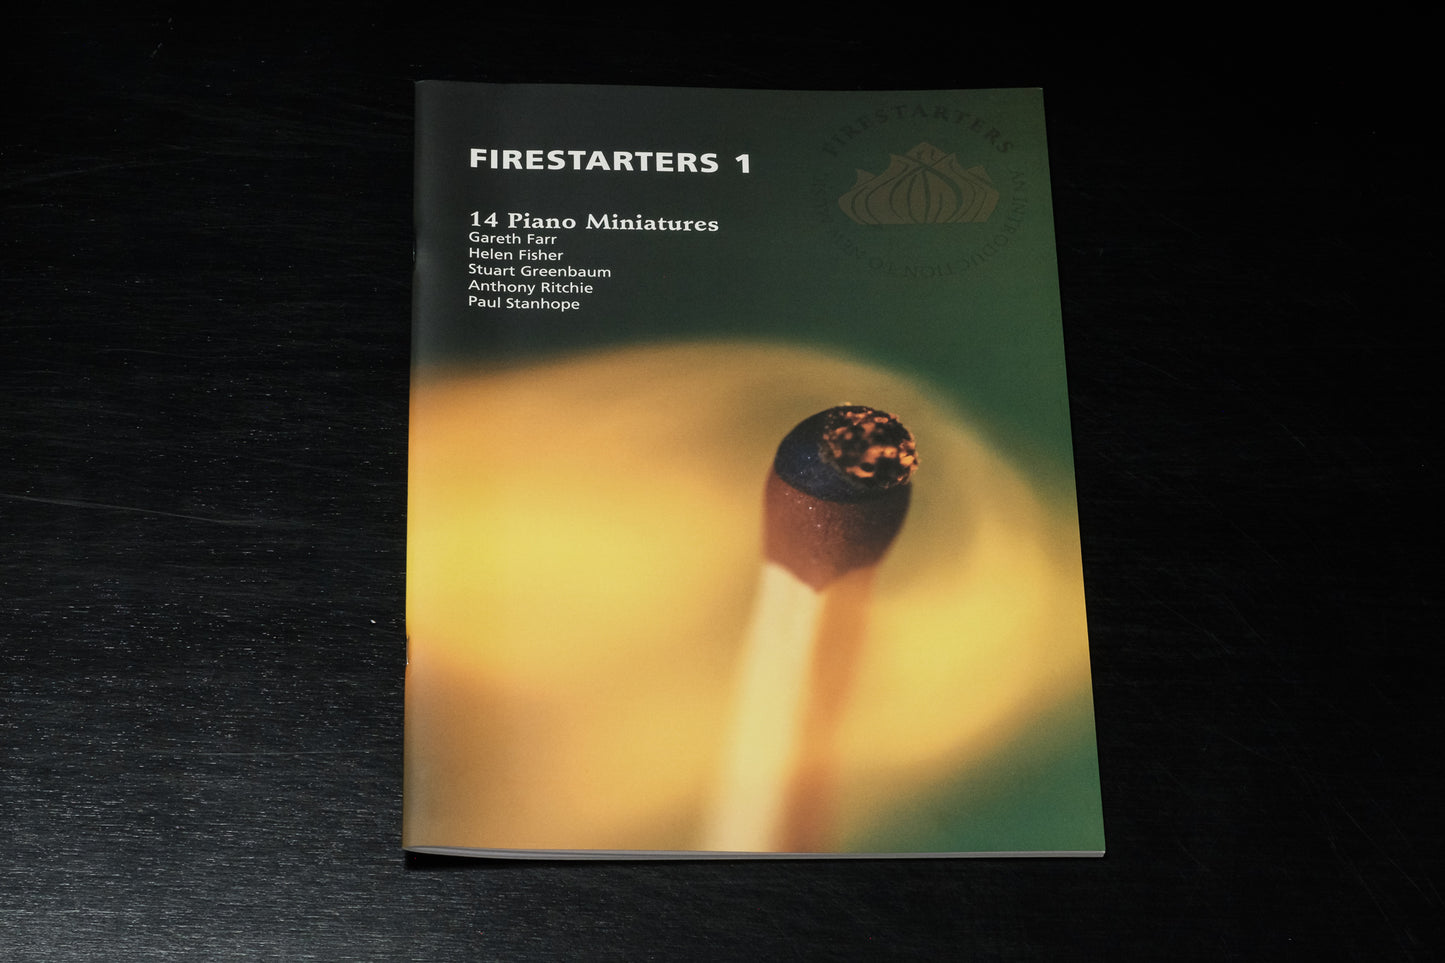 Firestarters 1